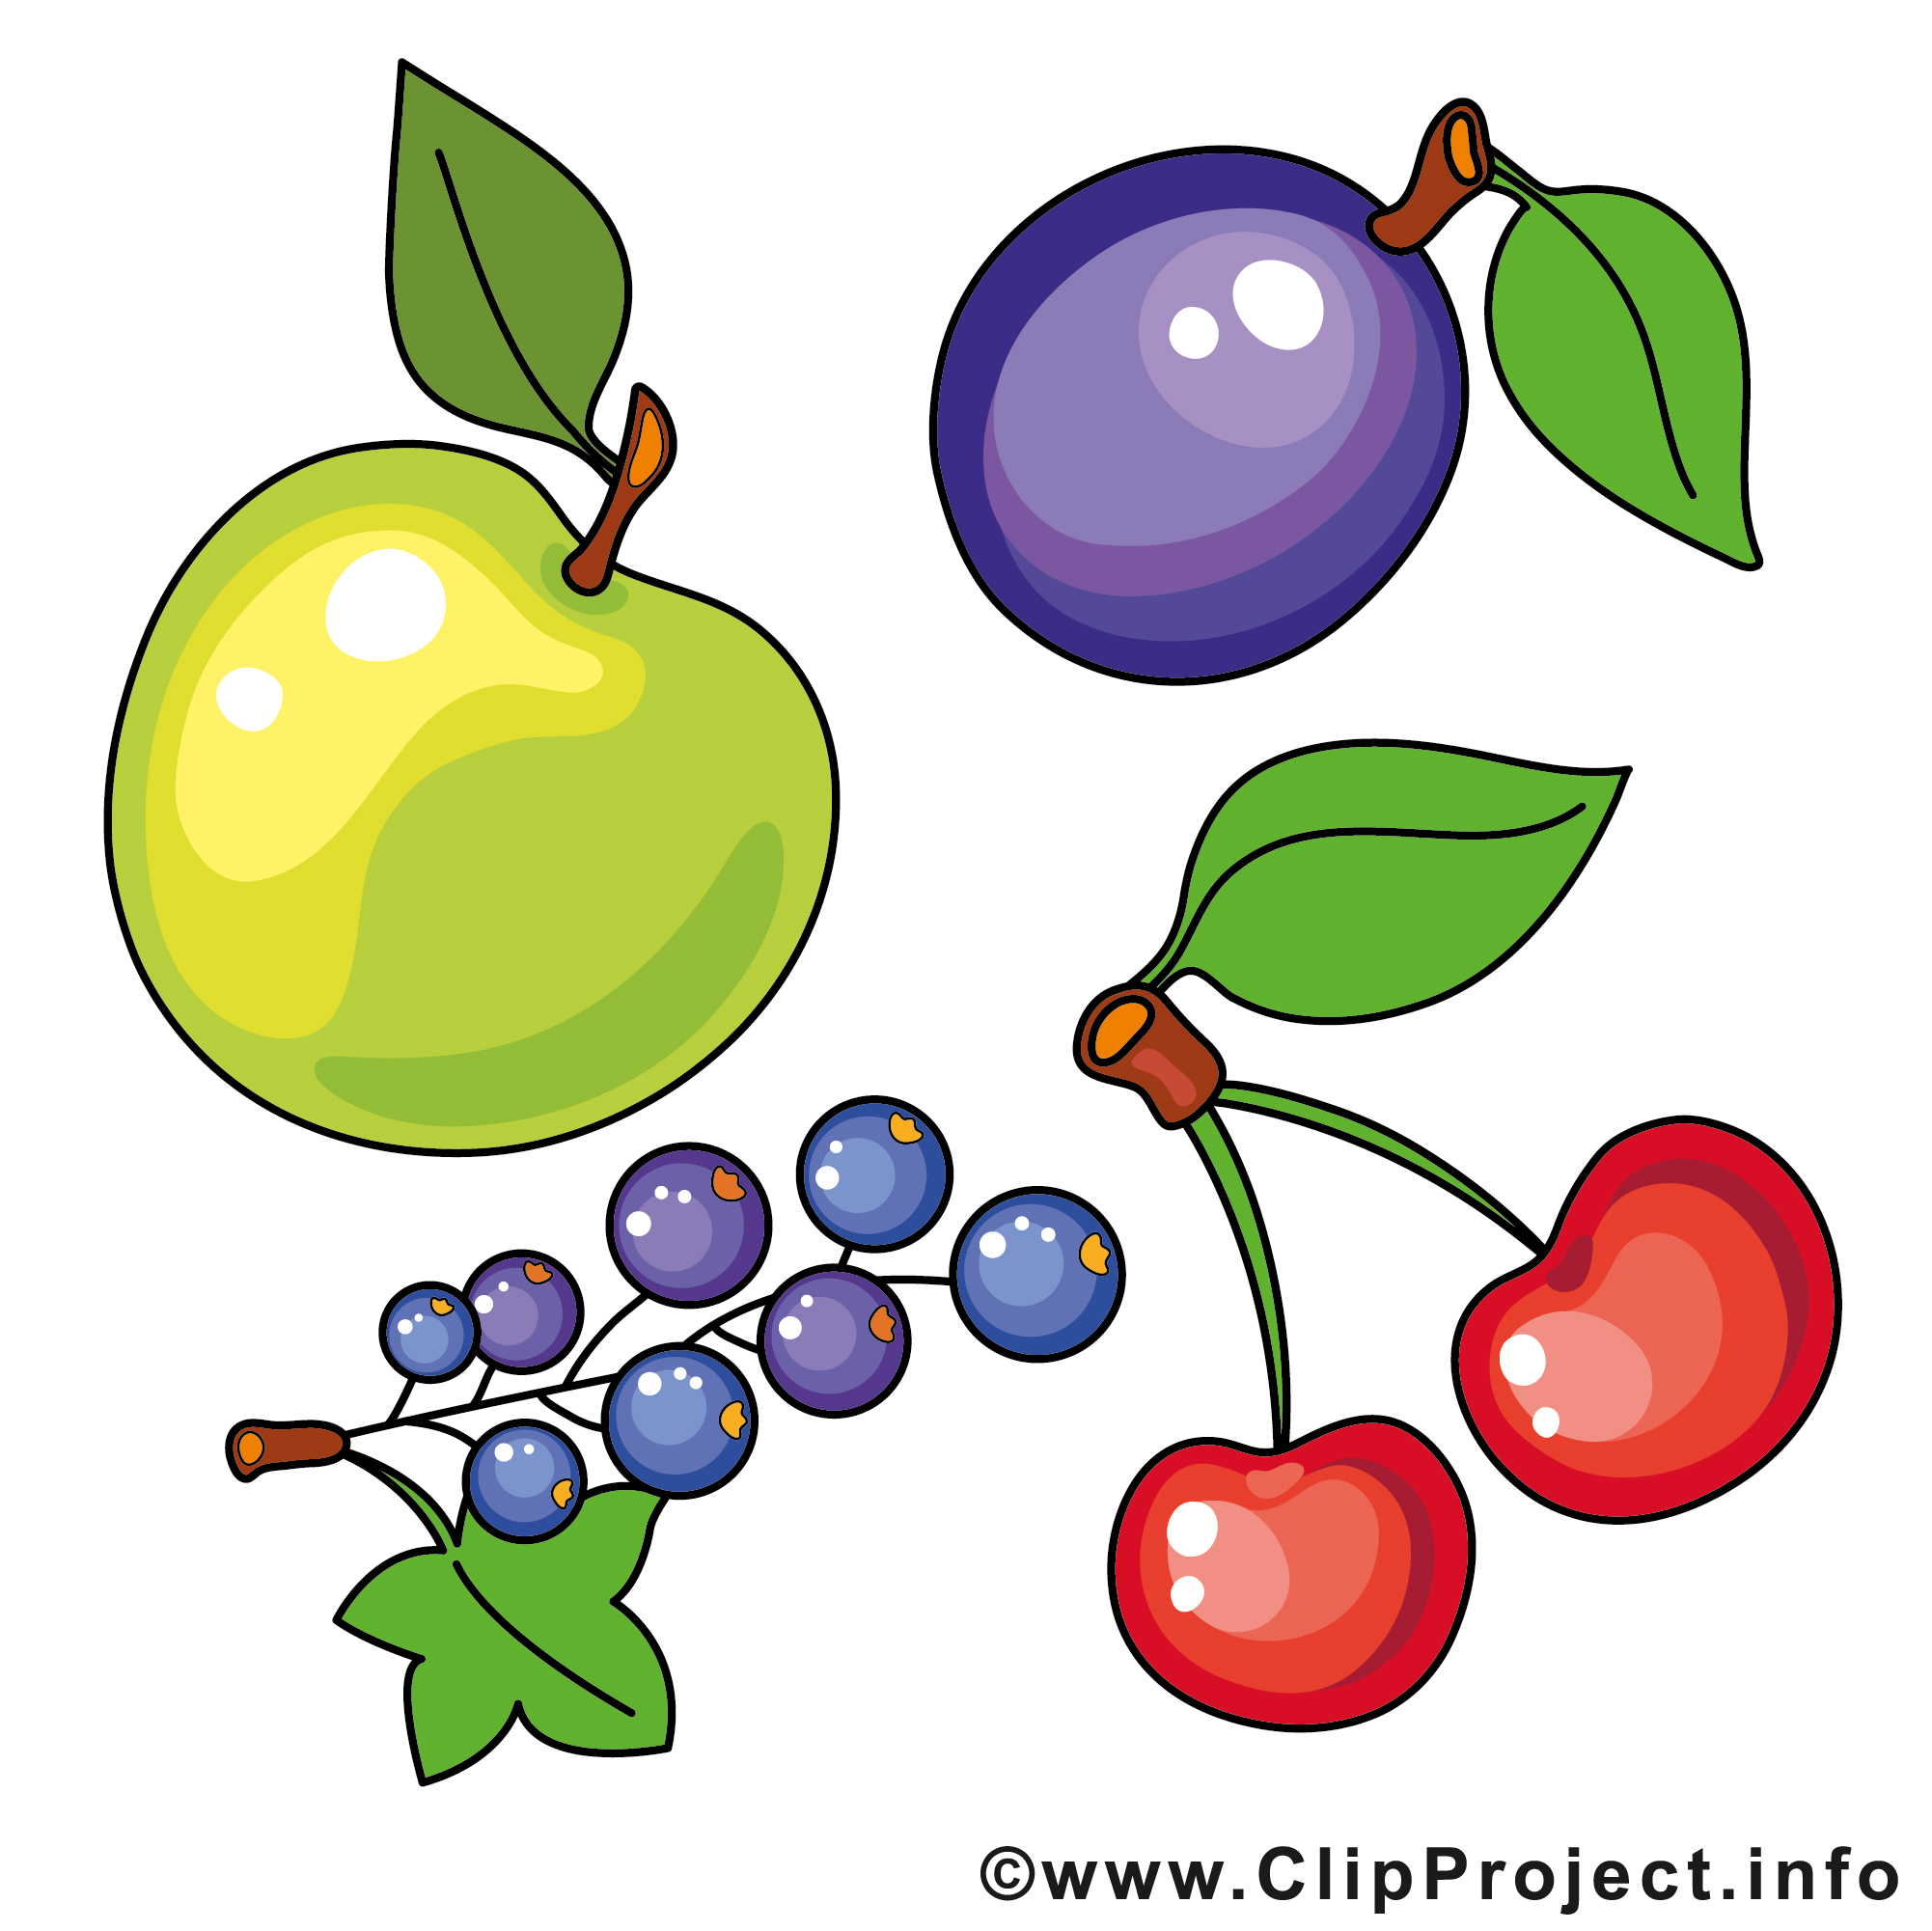 image clipart gratuit fruits - photo #17